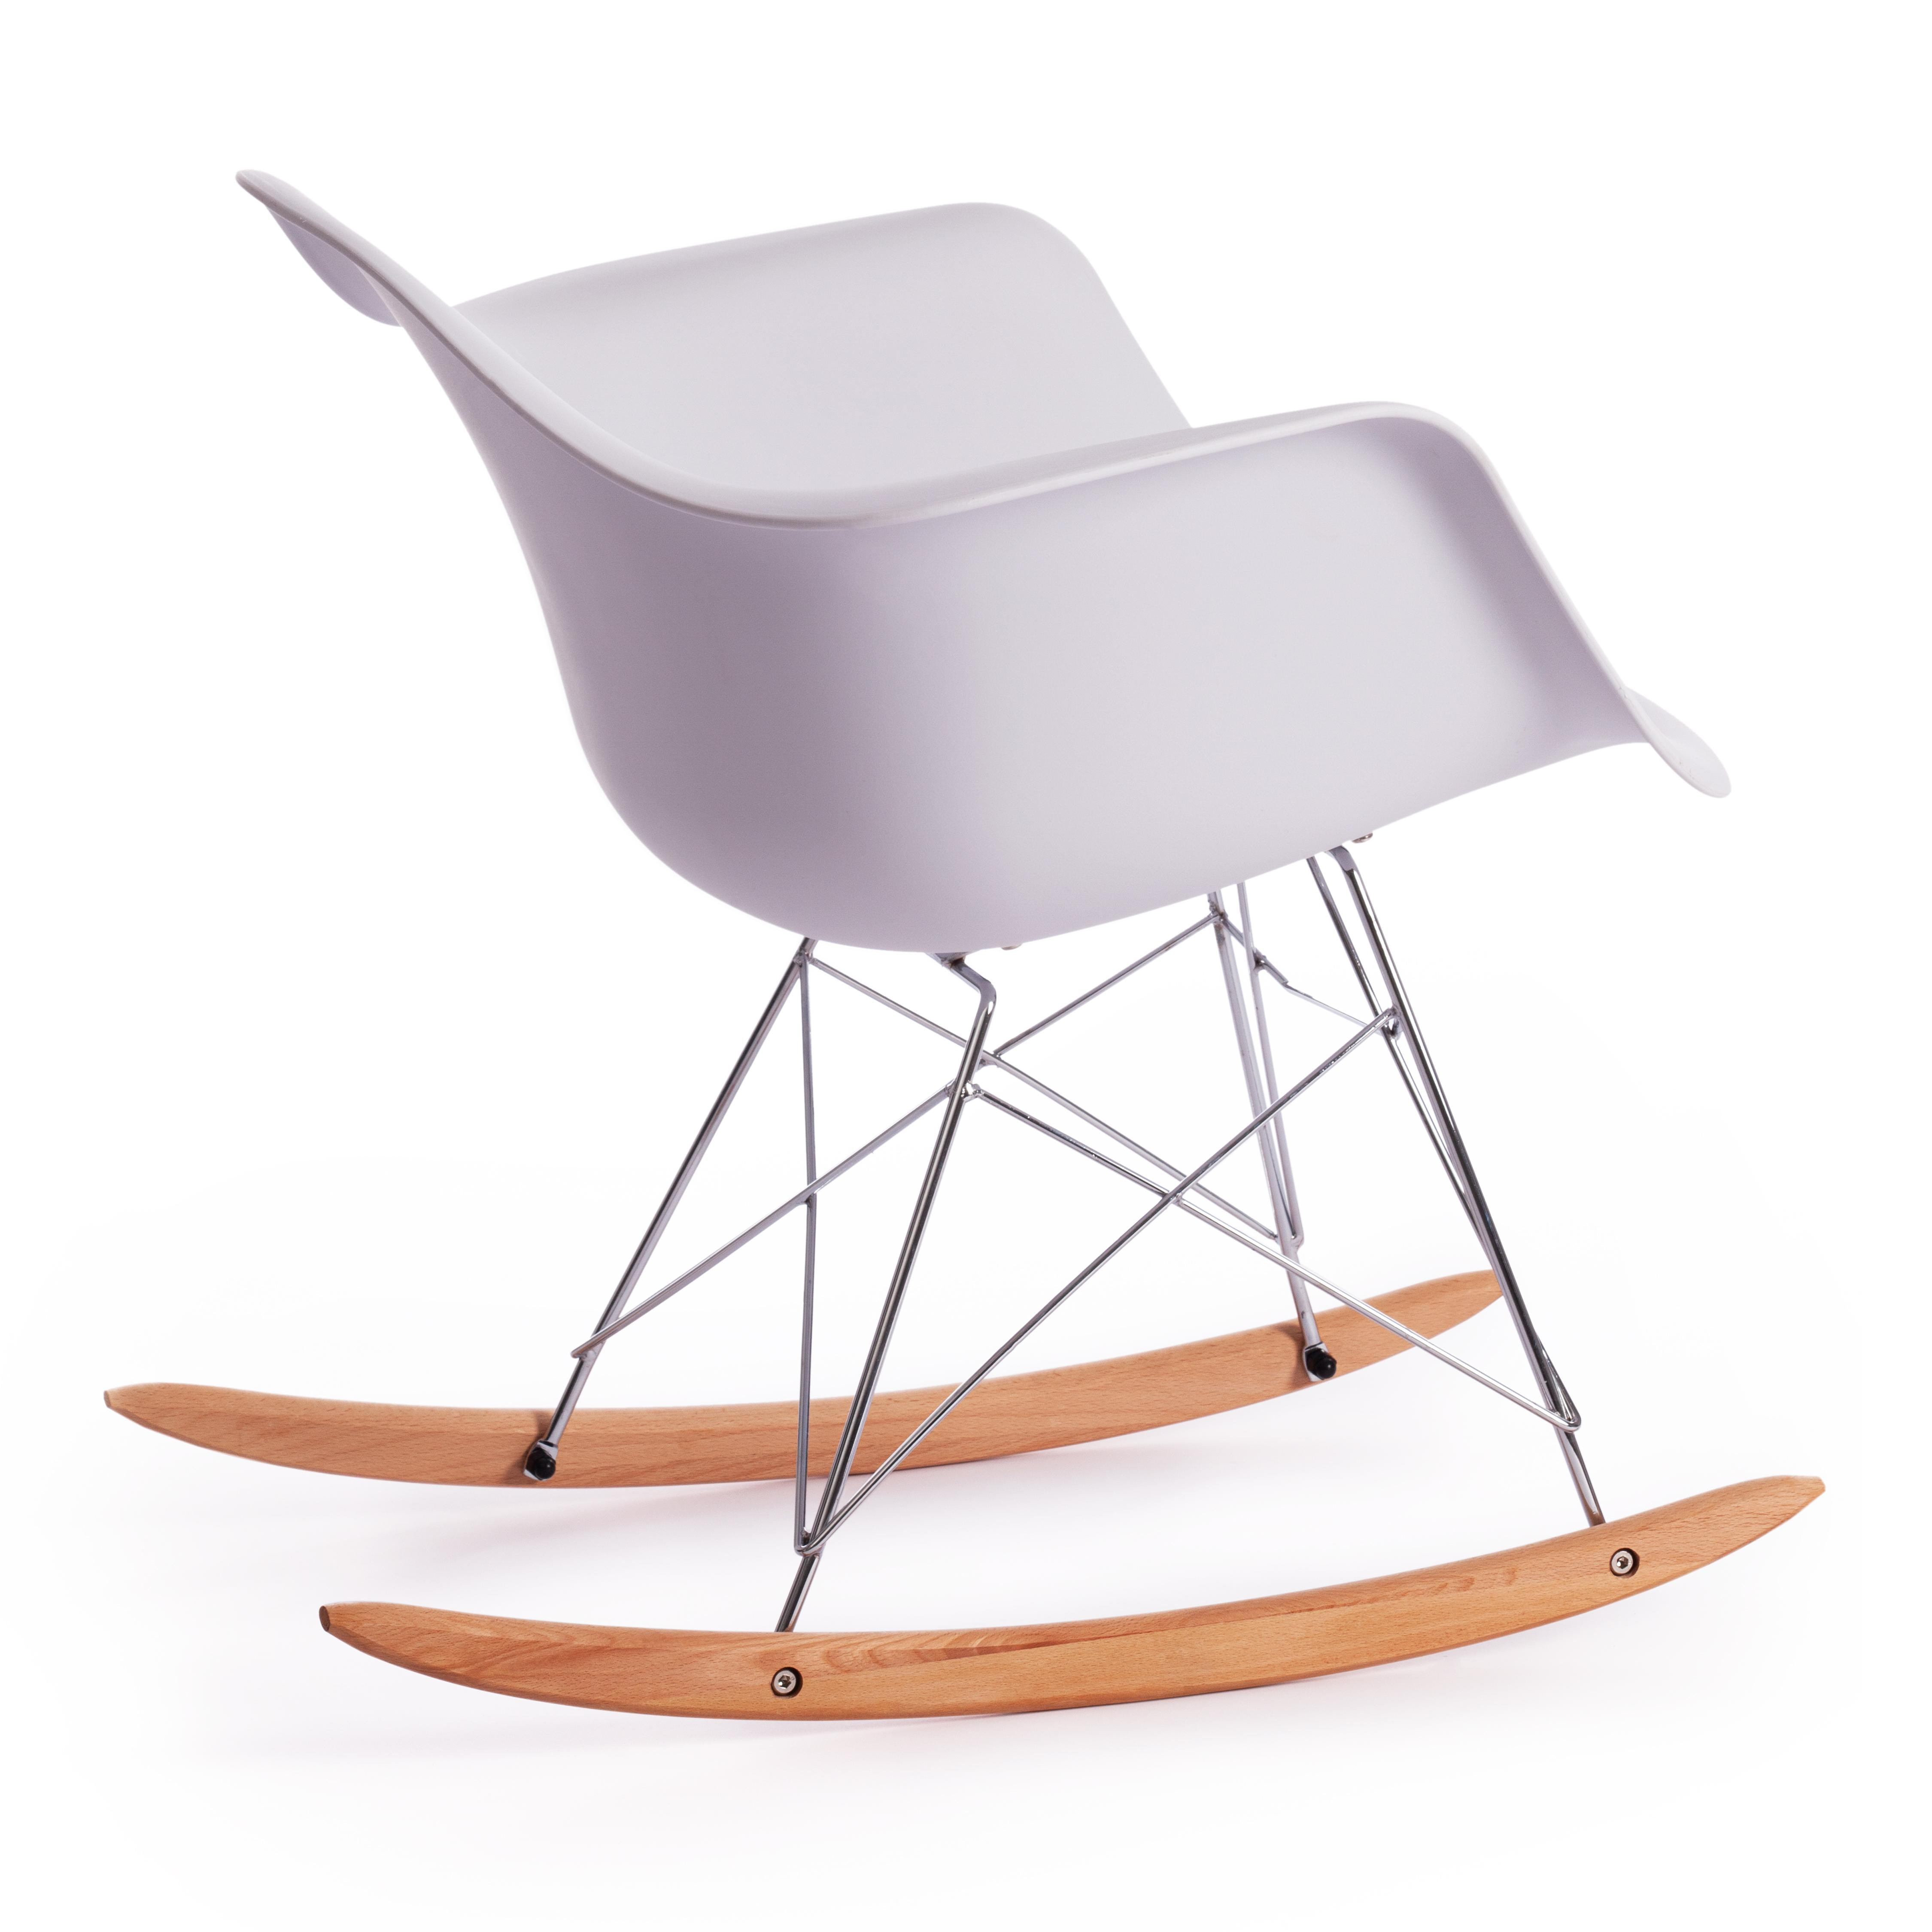 Кресло-качалка CINDY (mod. C1025A) пластик/металл/дерево, 65 х 61 х 74 см, белый 018 /натуральный